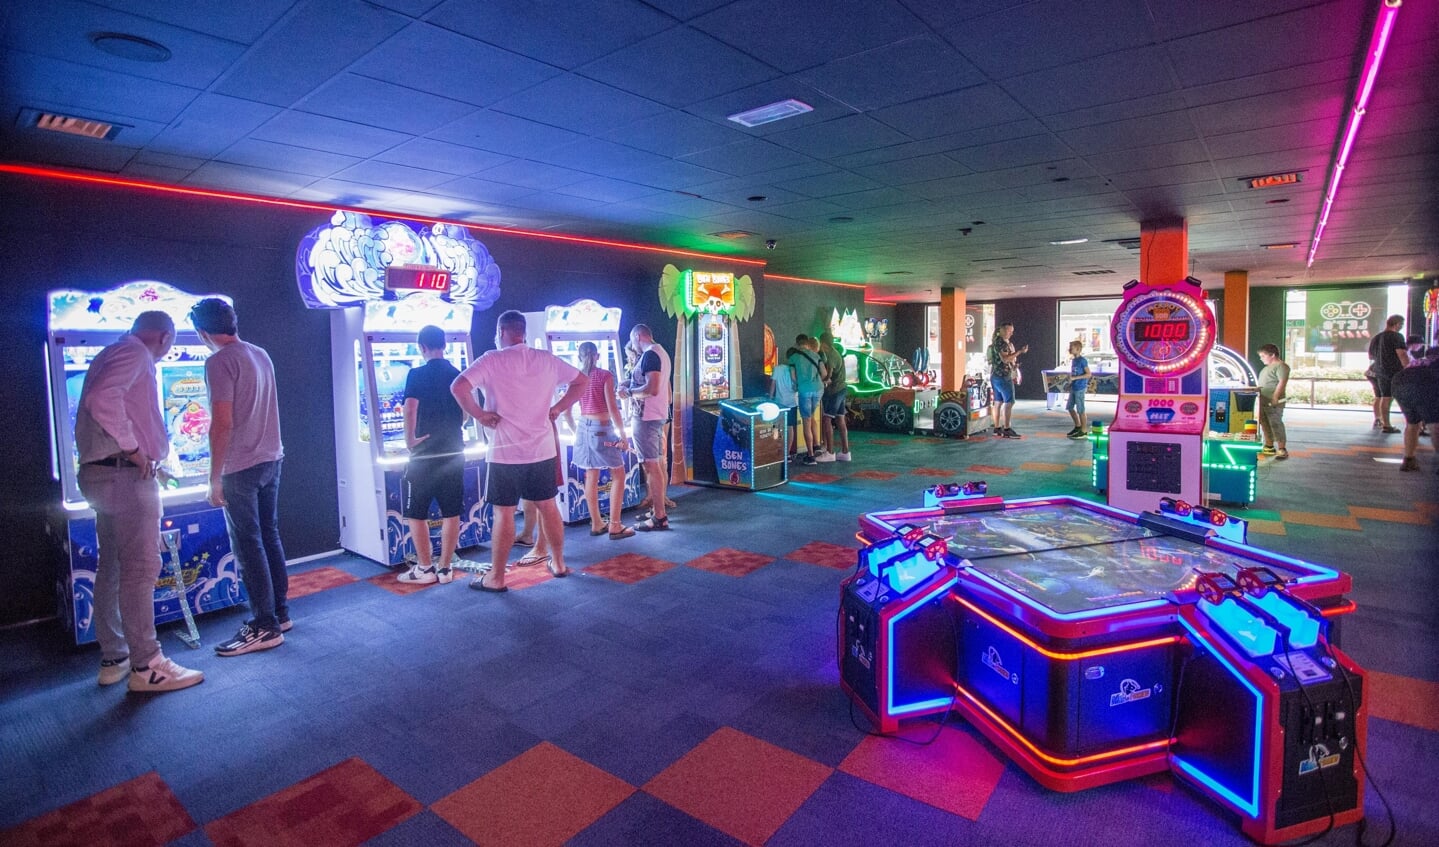 Arcade Speelhal Lets Play-it is coronaproof en speelt in op de wensen van haar bezoekers.